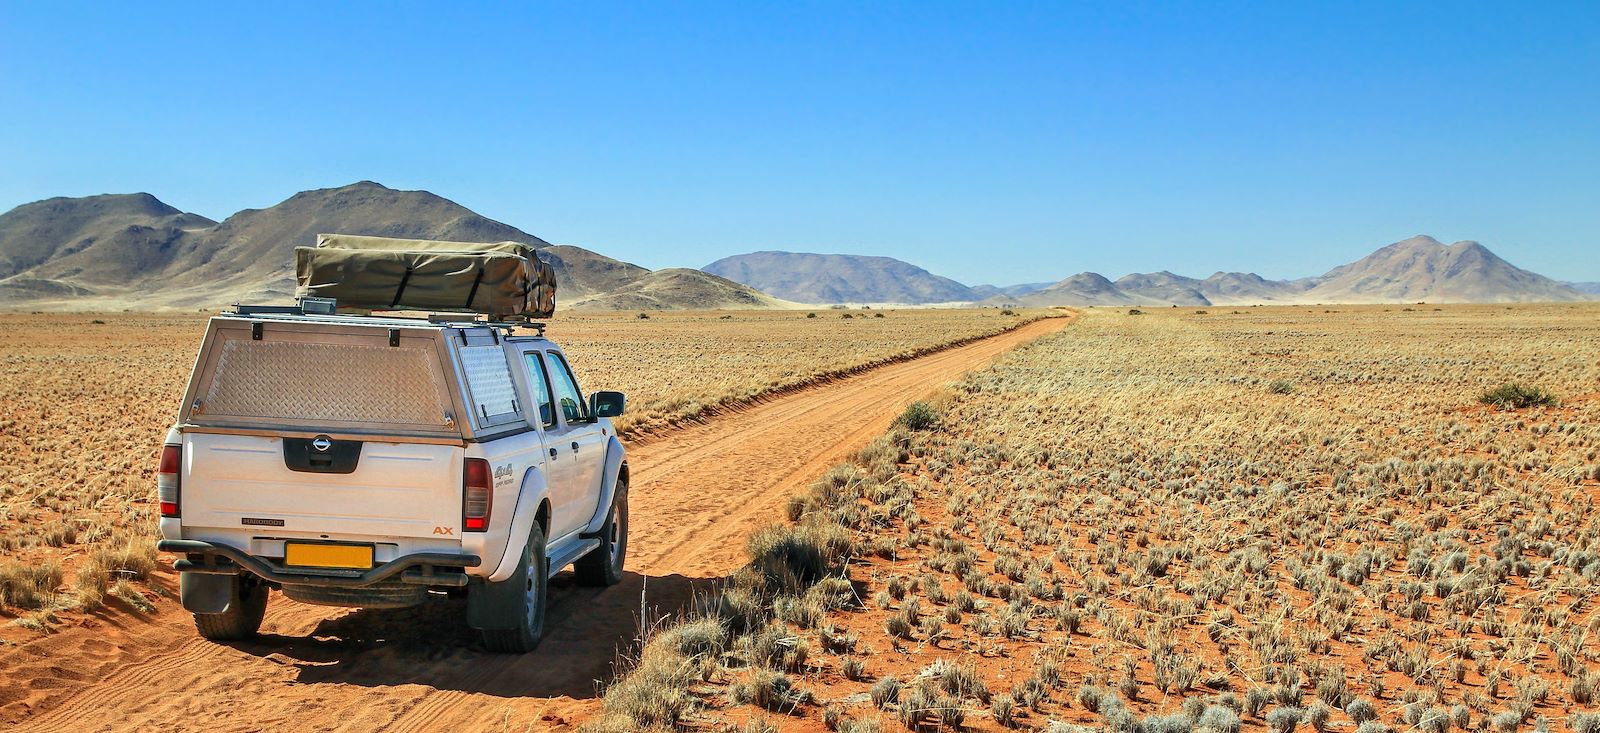 Voyage roadtrip - La Namibie sous les étoiles